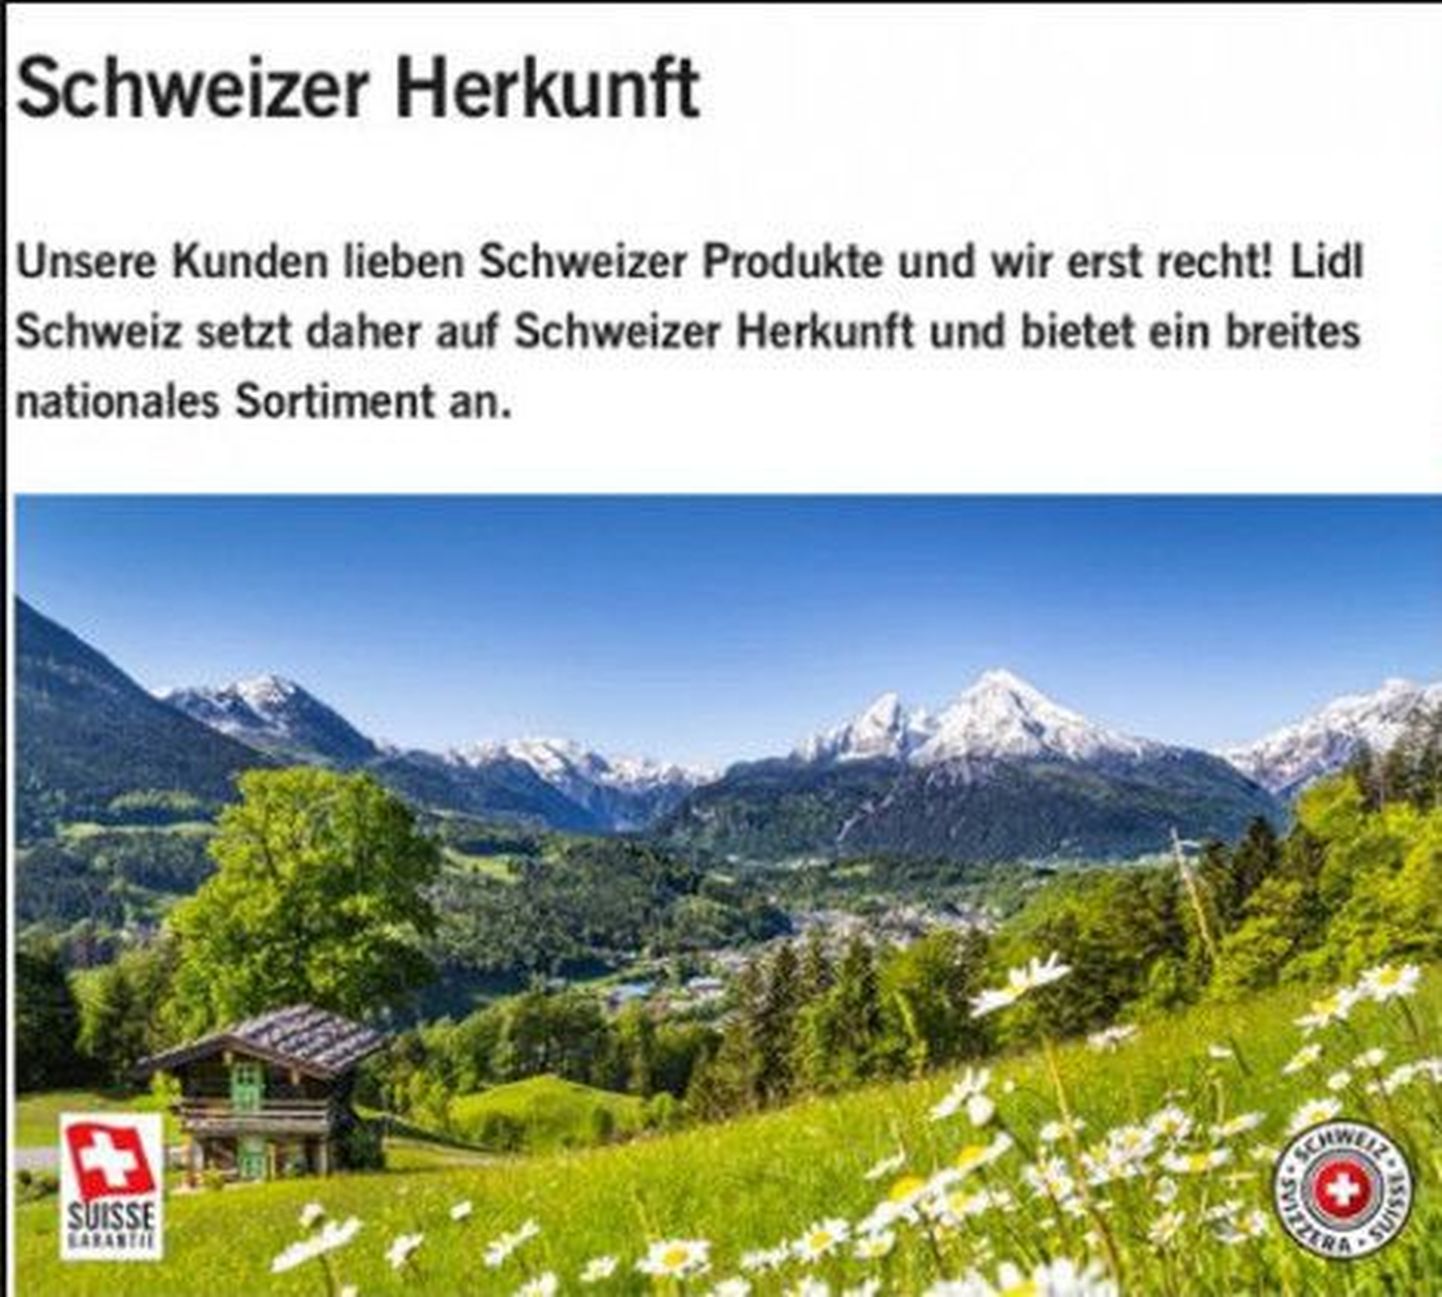 Watzmanni mägi asub Saksamaal Baieris, mitte Šveitsis, nagu arvas Lidl.